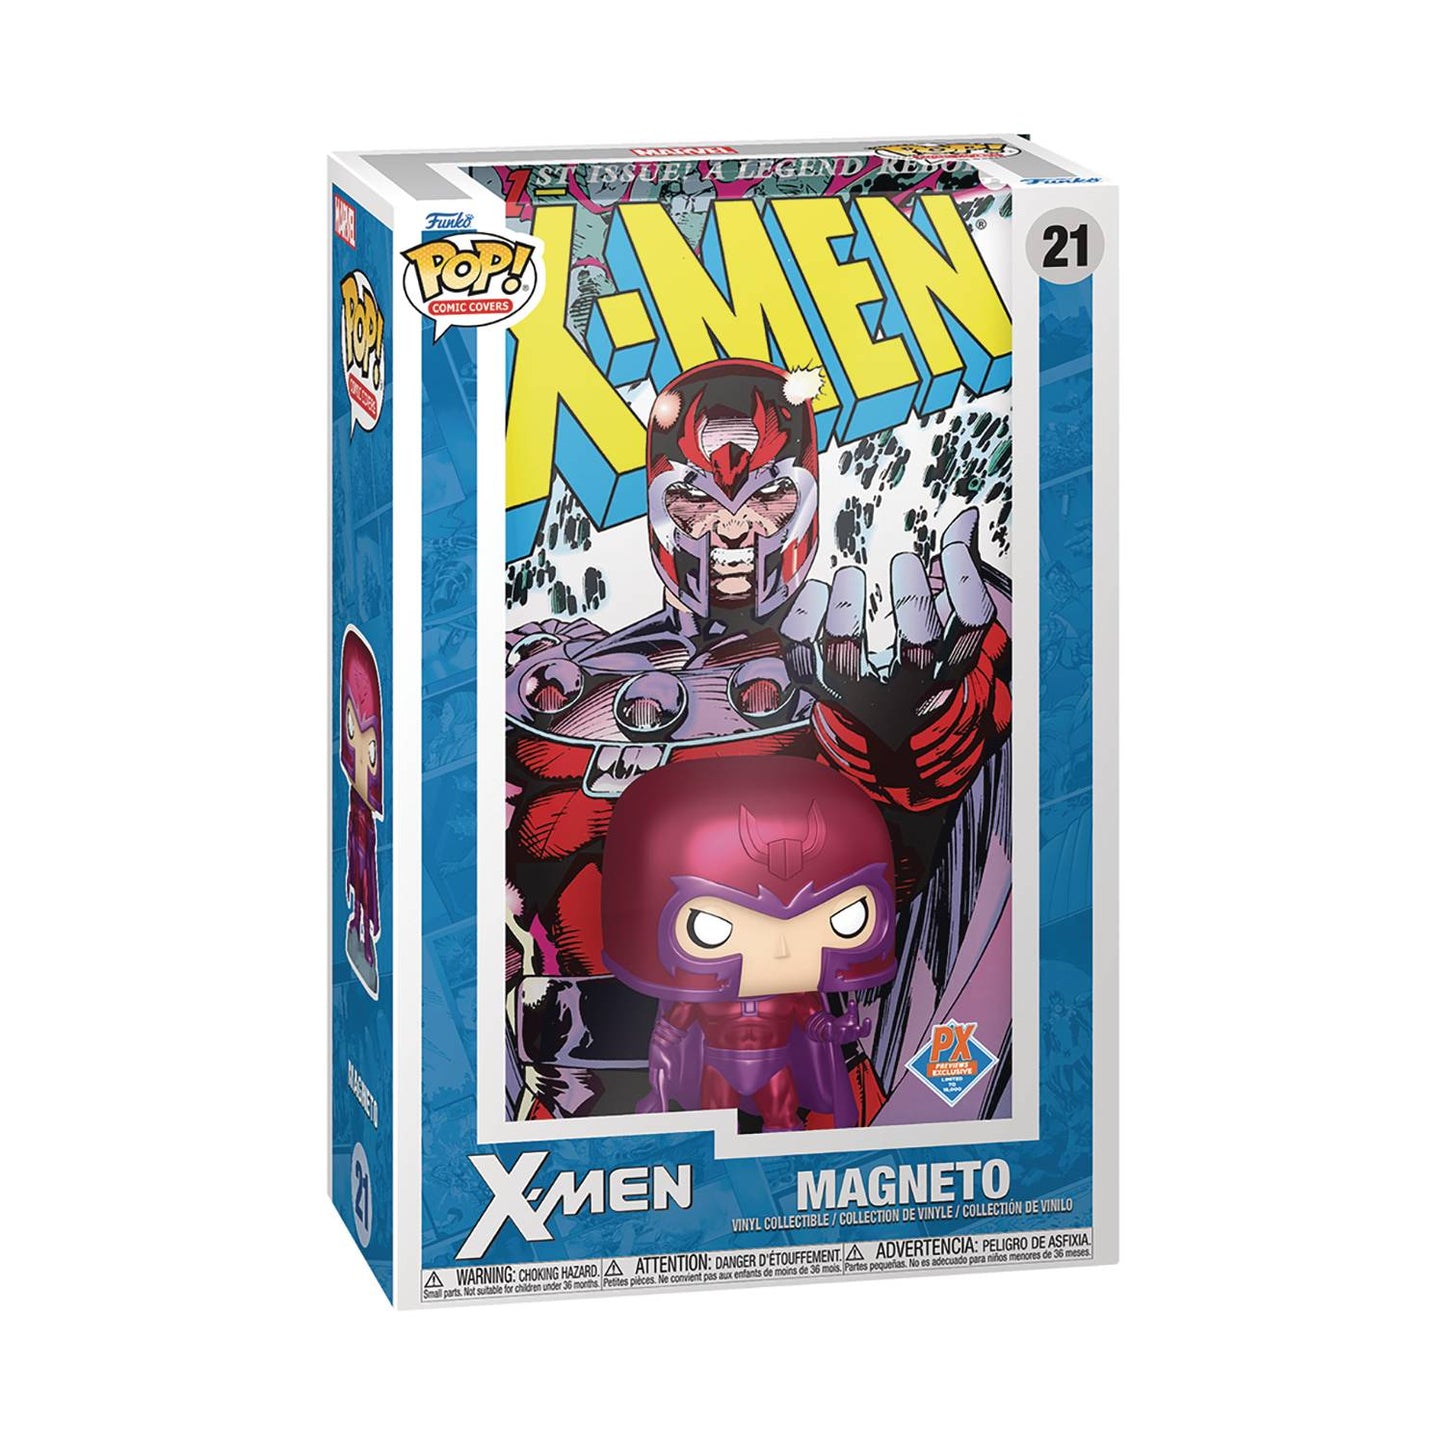 Pop Comic Cover: Marvel - X Men #1 Magneto - Previews Exclusive Action Figure